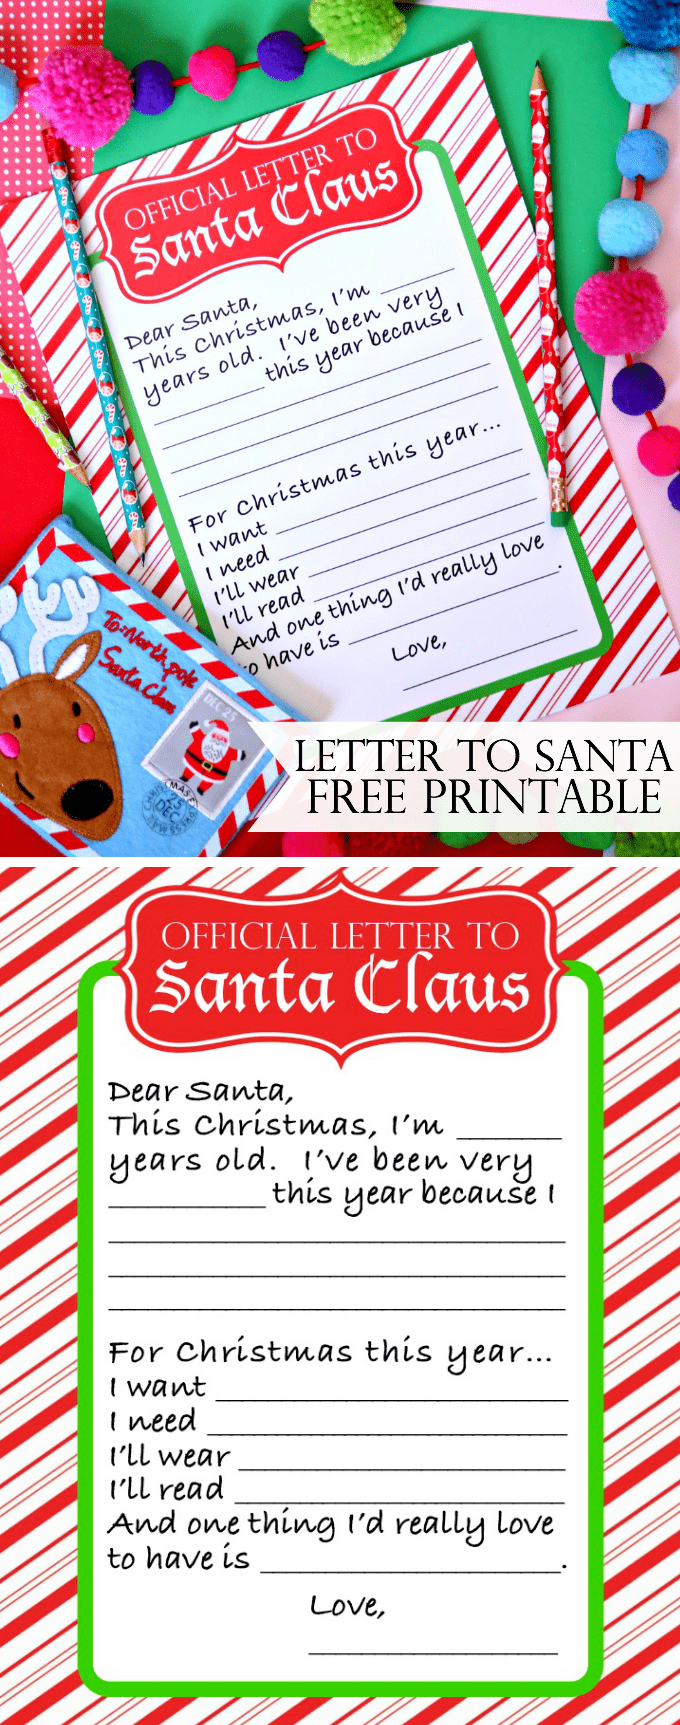 Letter to Santa Free Printable